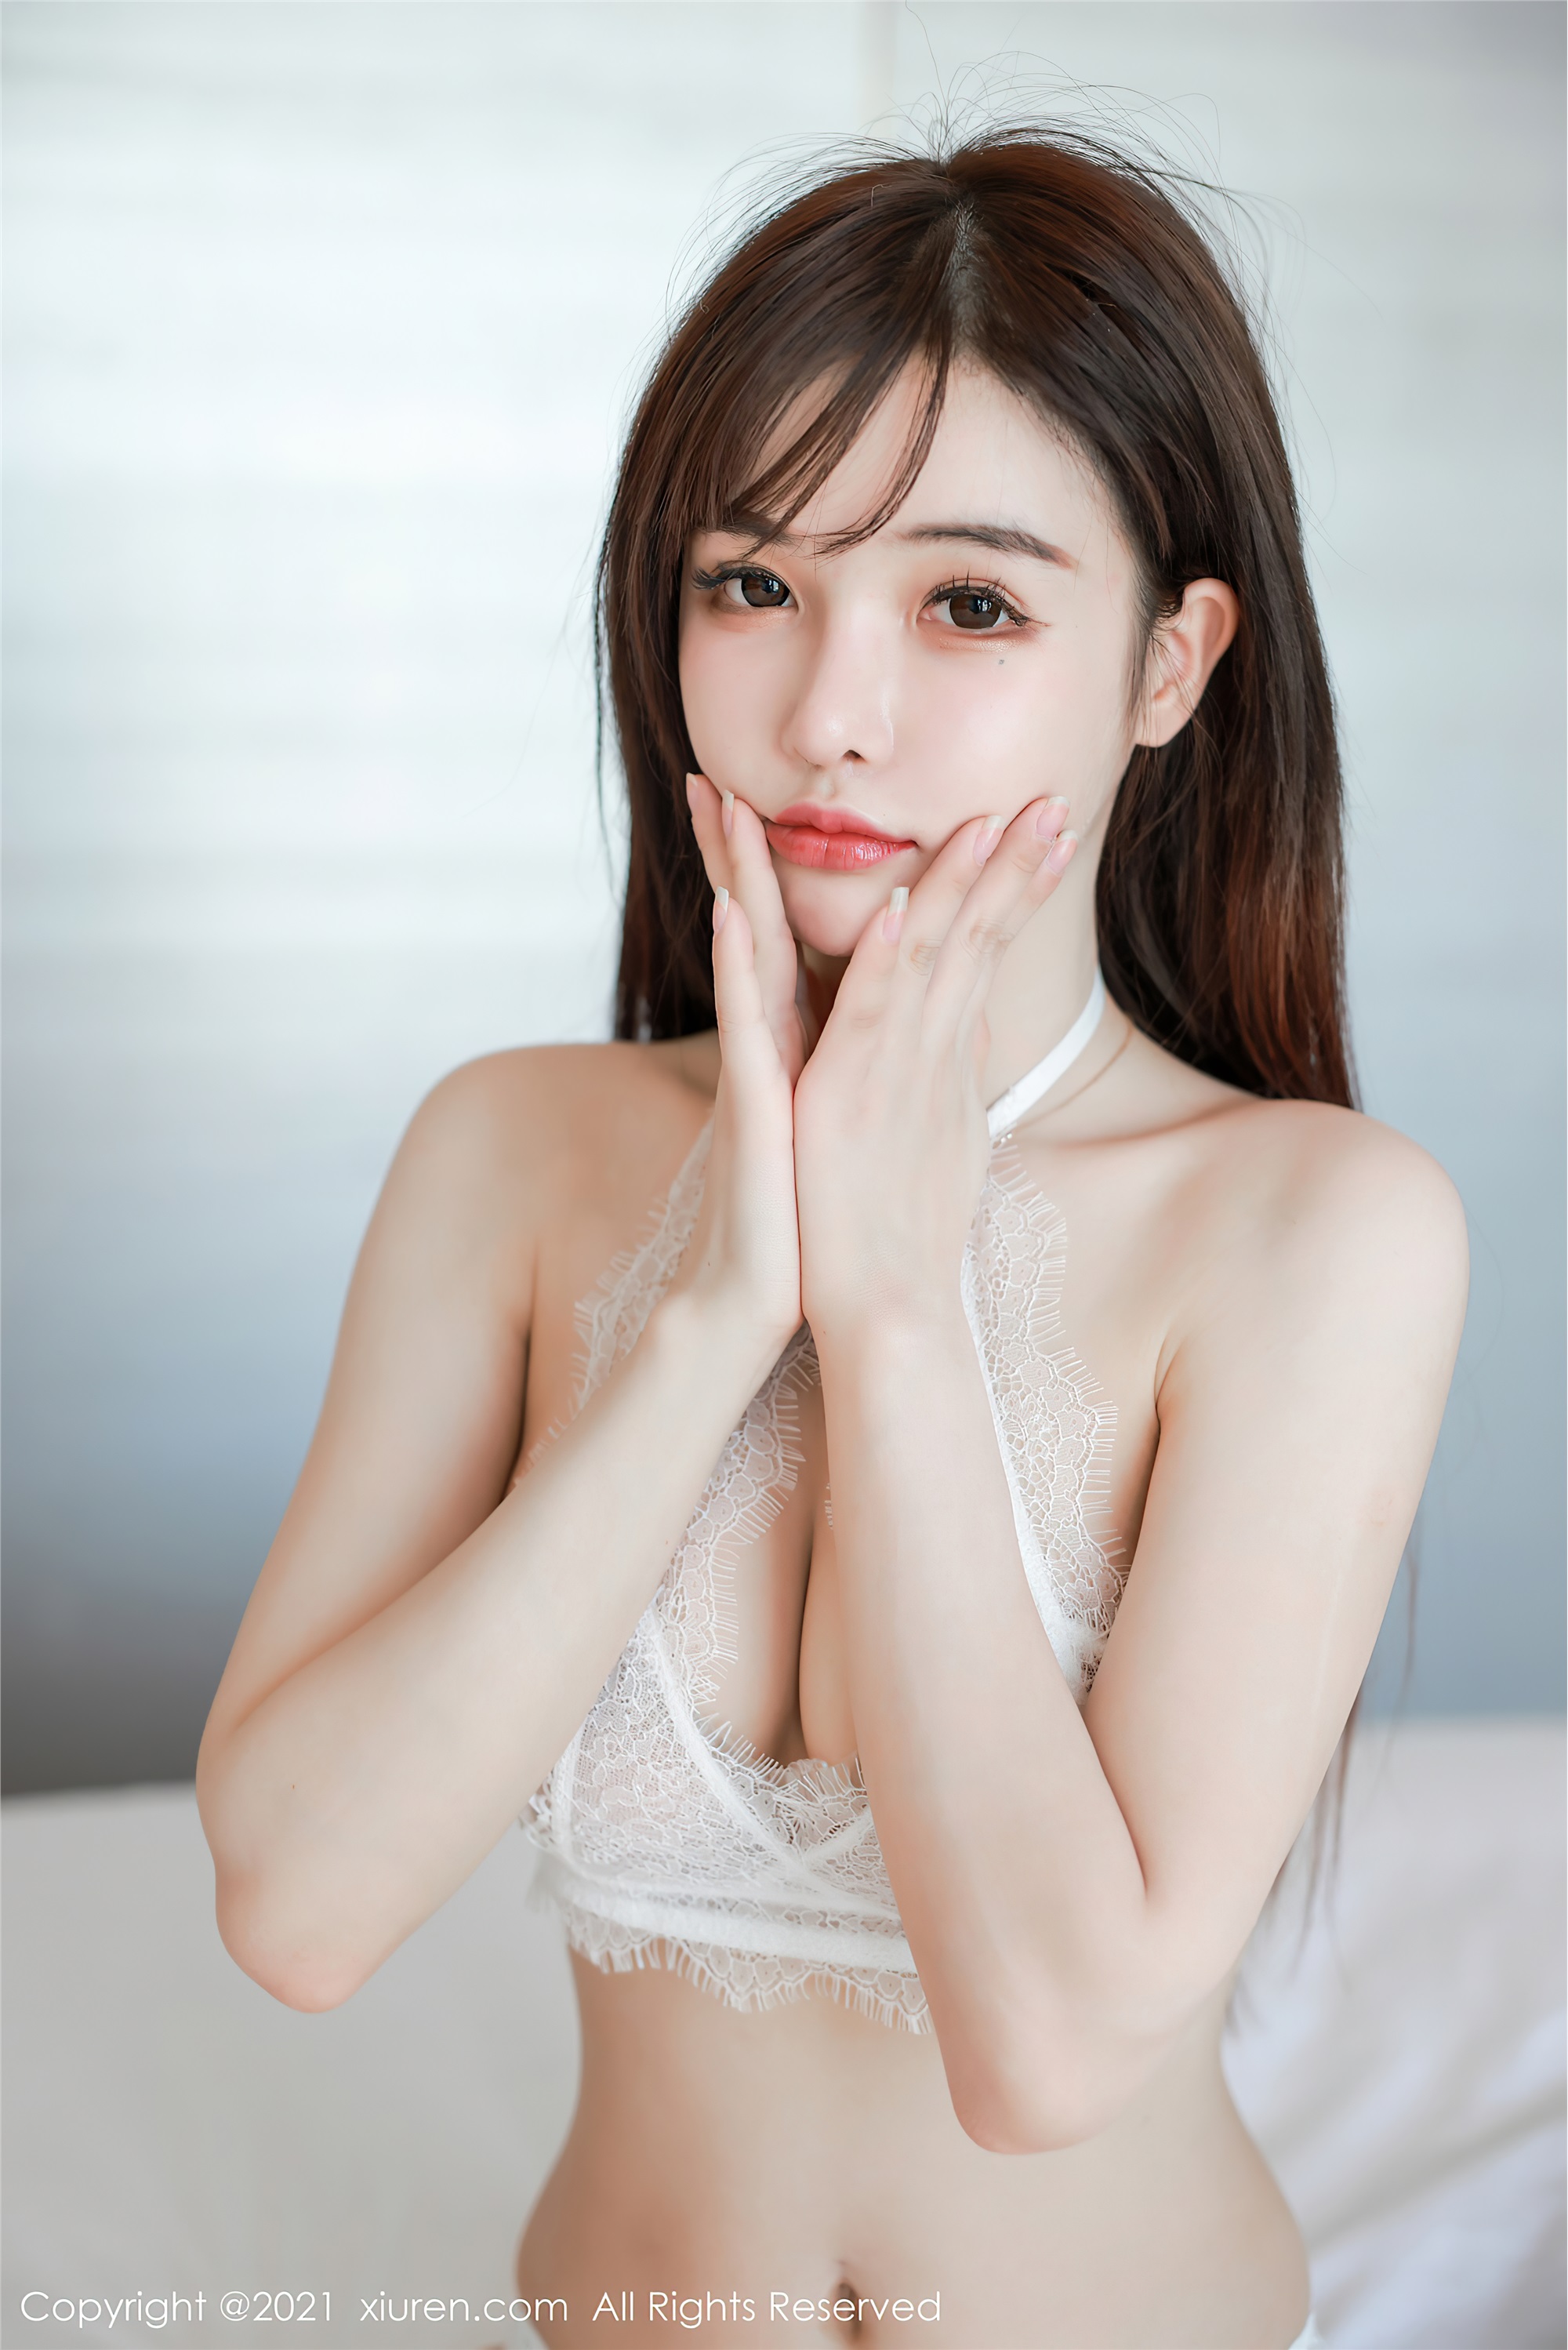 Xiuren 2021.01.27 No.3050 Nanchu younger sister